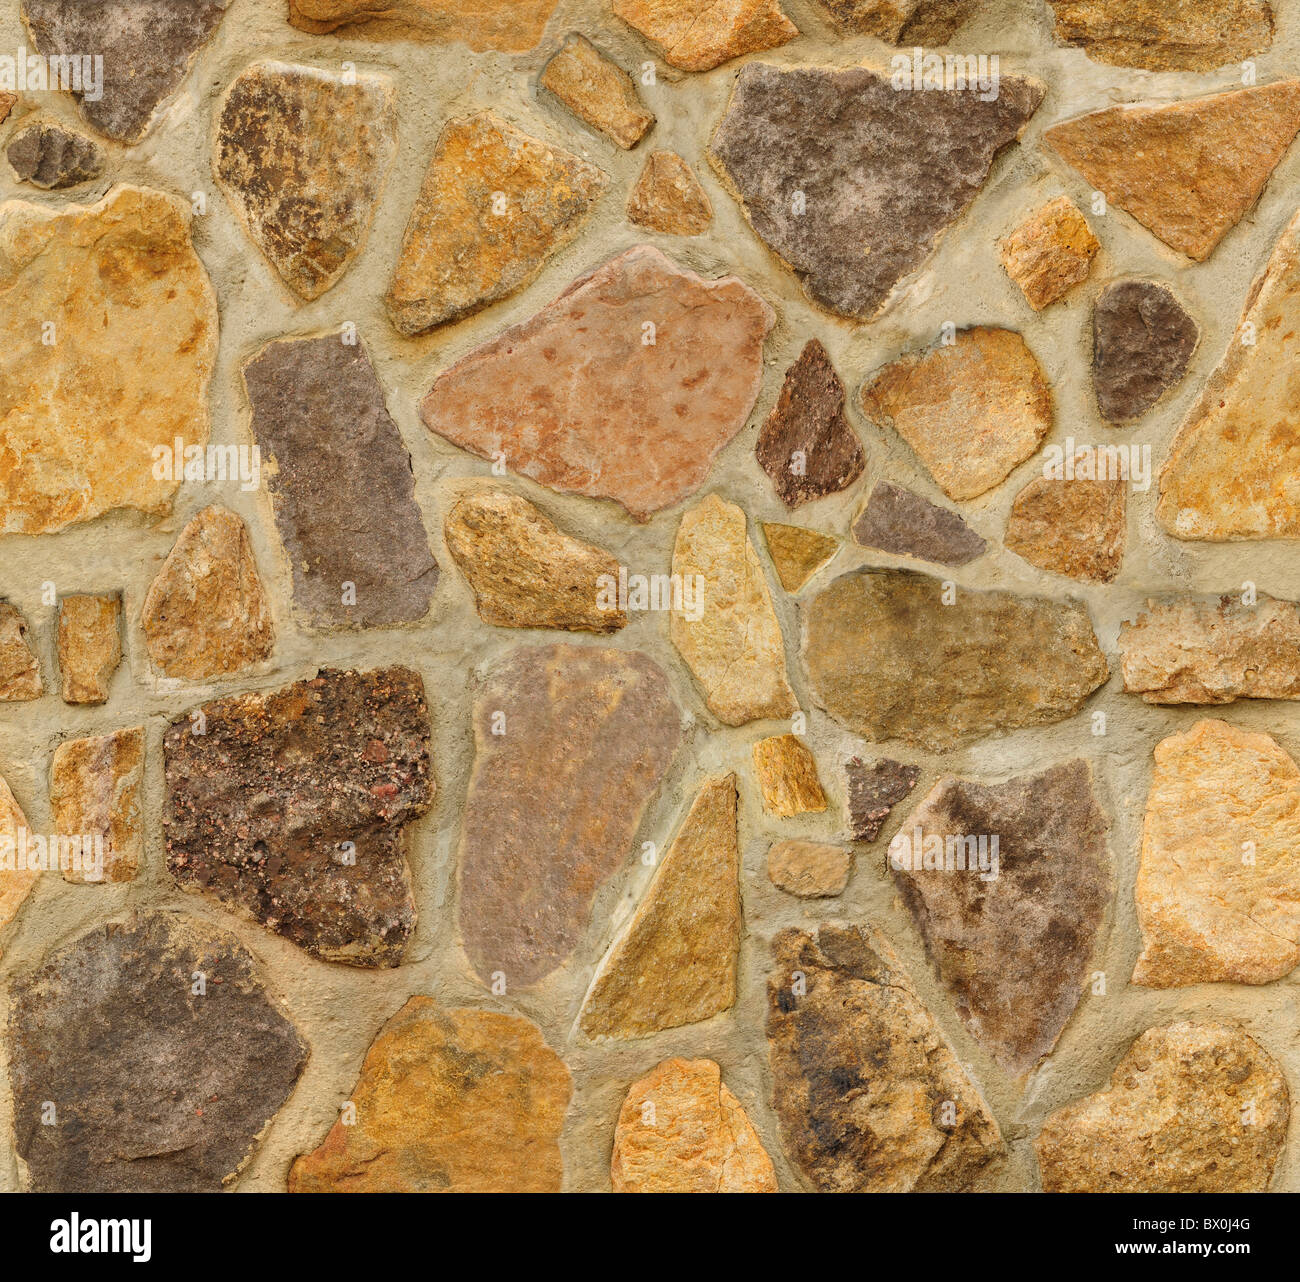 Un mur en maçonnerie avec des pierres de forme irrégulière. La texture se répète à la fois horizontalement et verticalement de manière transparente. Banque D'Images